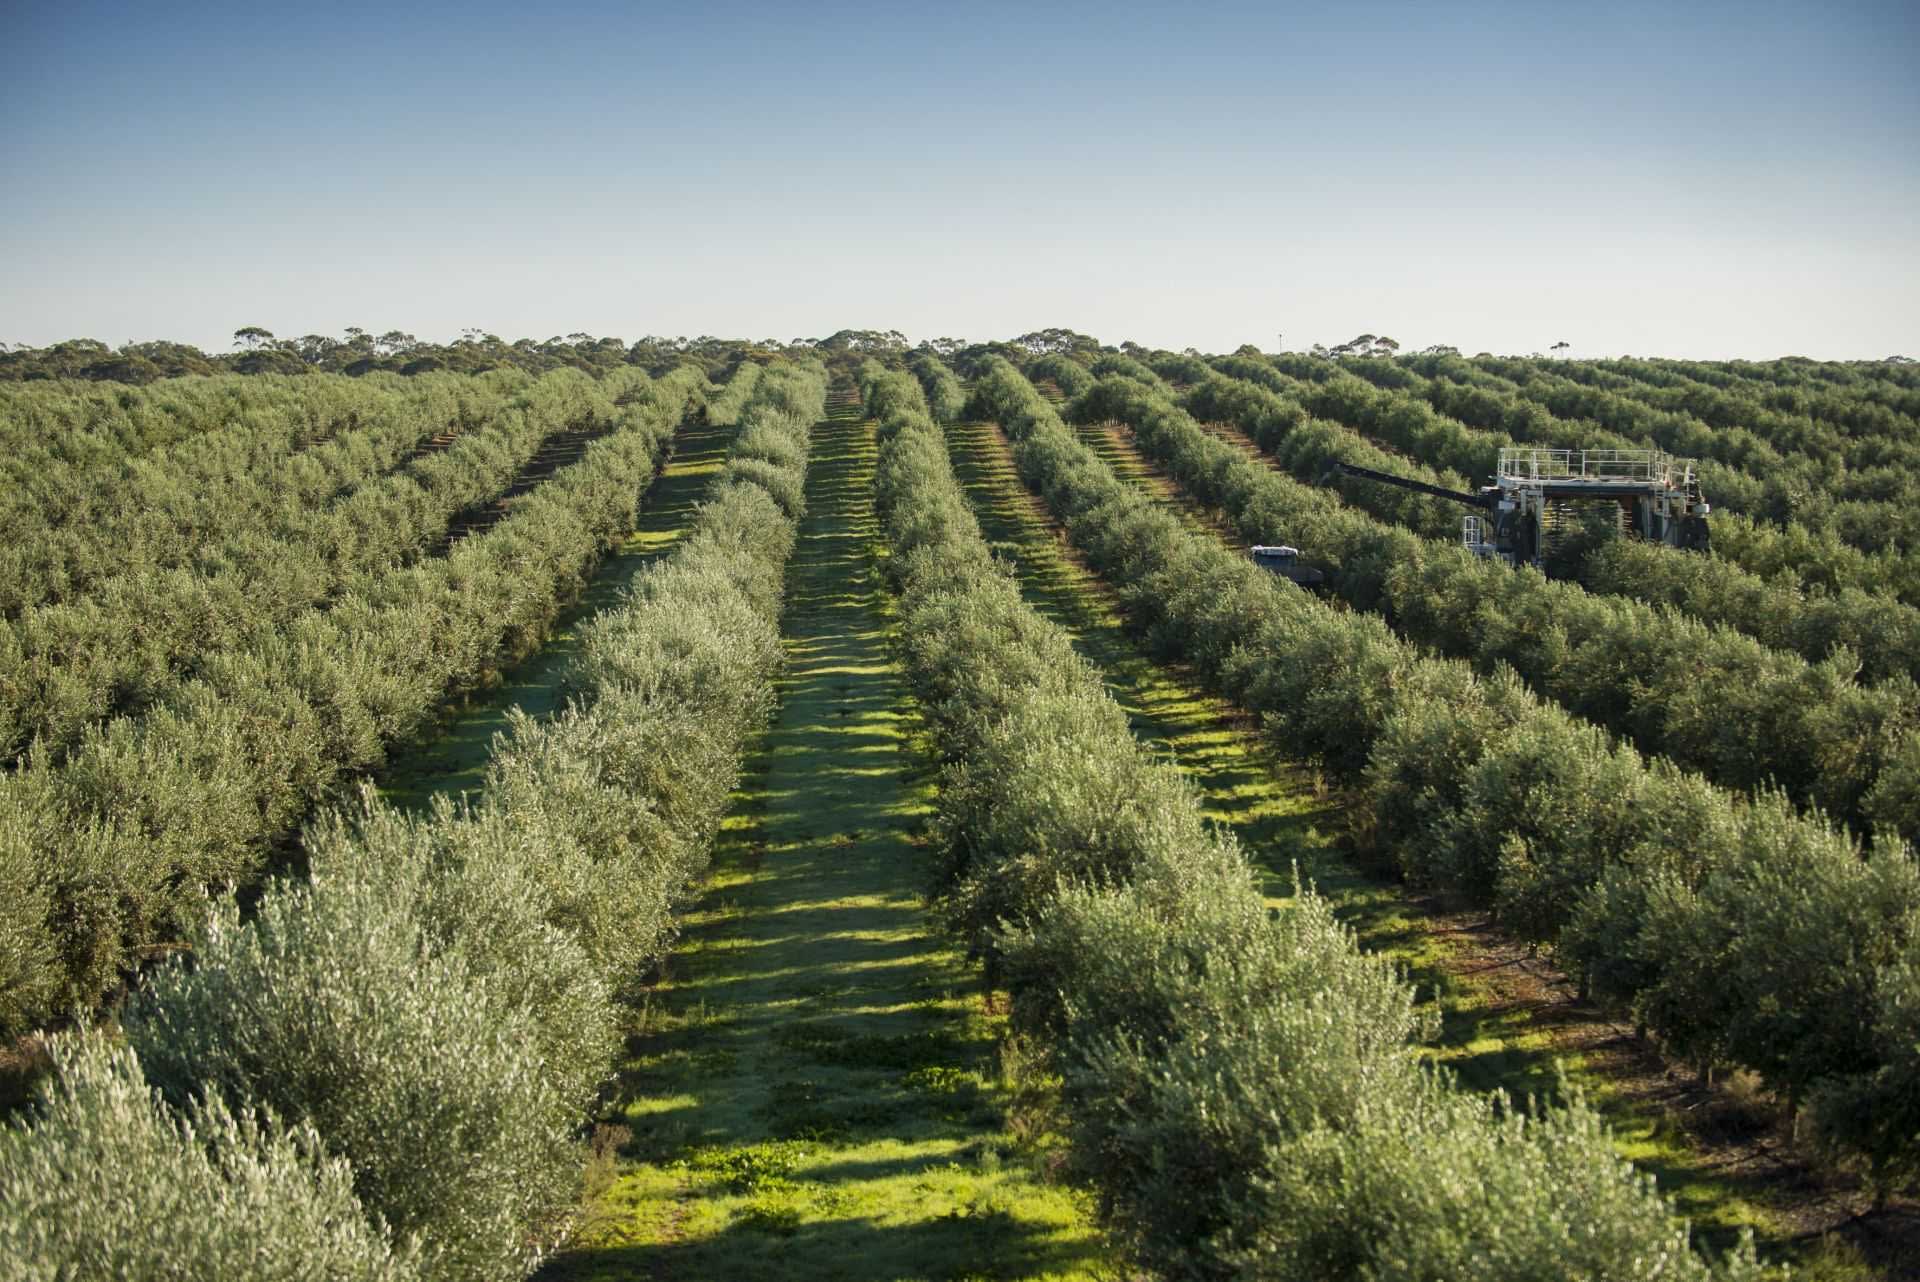 negocio-de-producción-australia-y-nueva-zelanda-después-de-años-de-sequía-y-covid-los-australianos-celebran-los-tiempos-de-cosecha-del-aceite-de-oliva-que-baten-récords